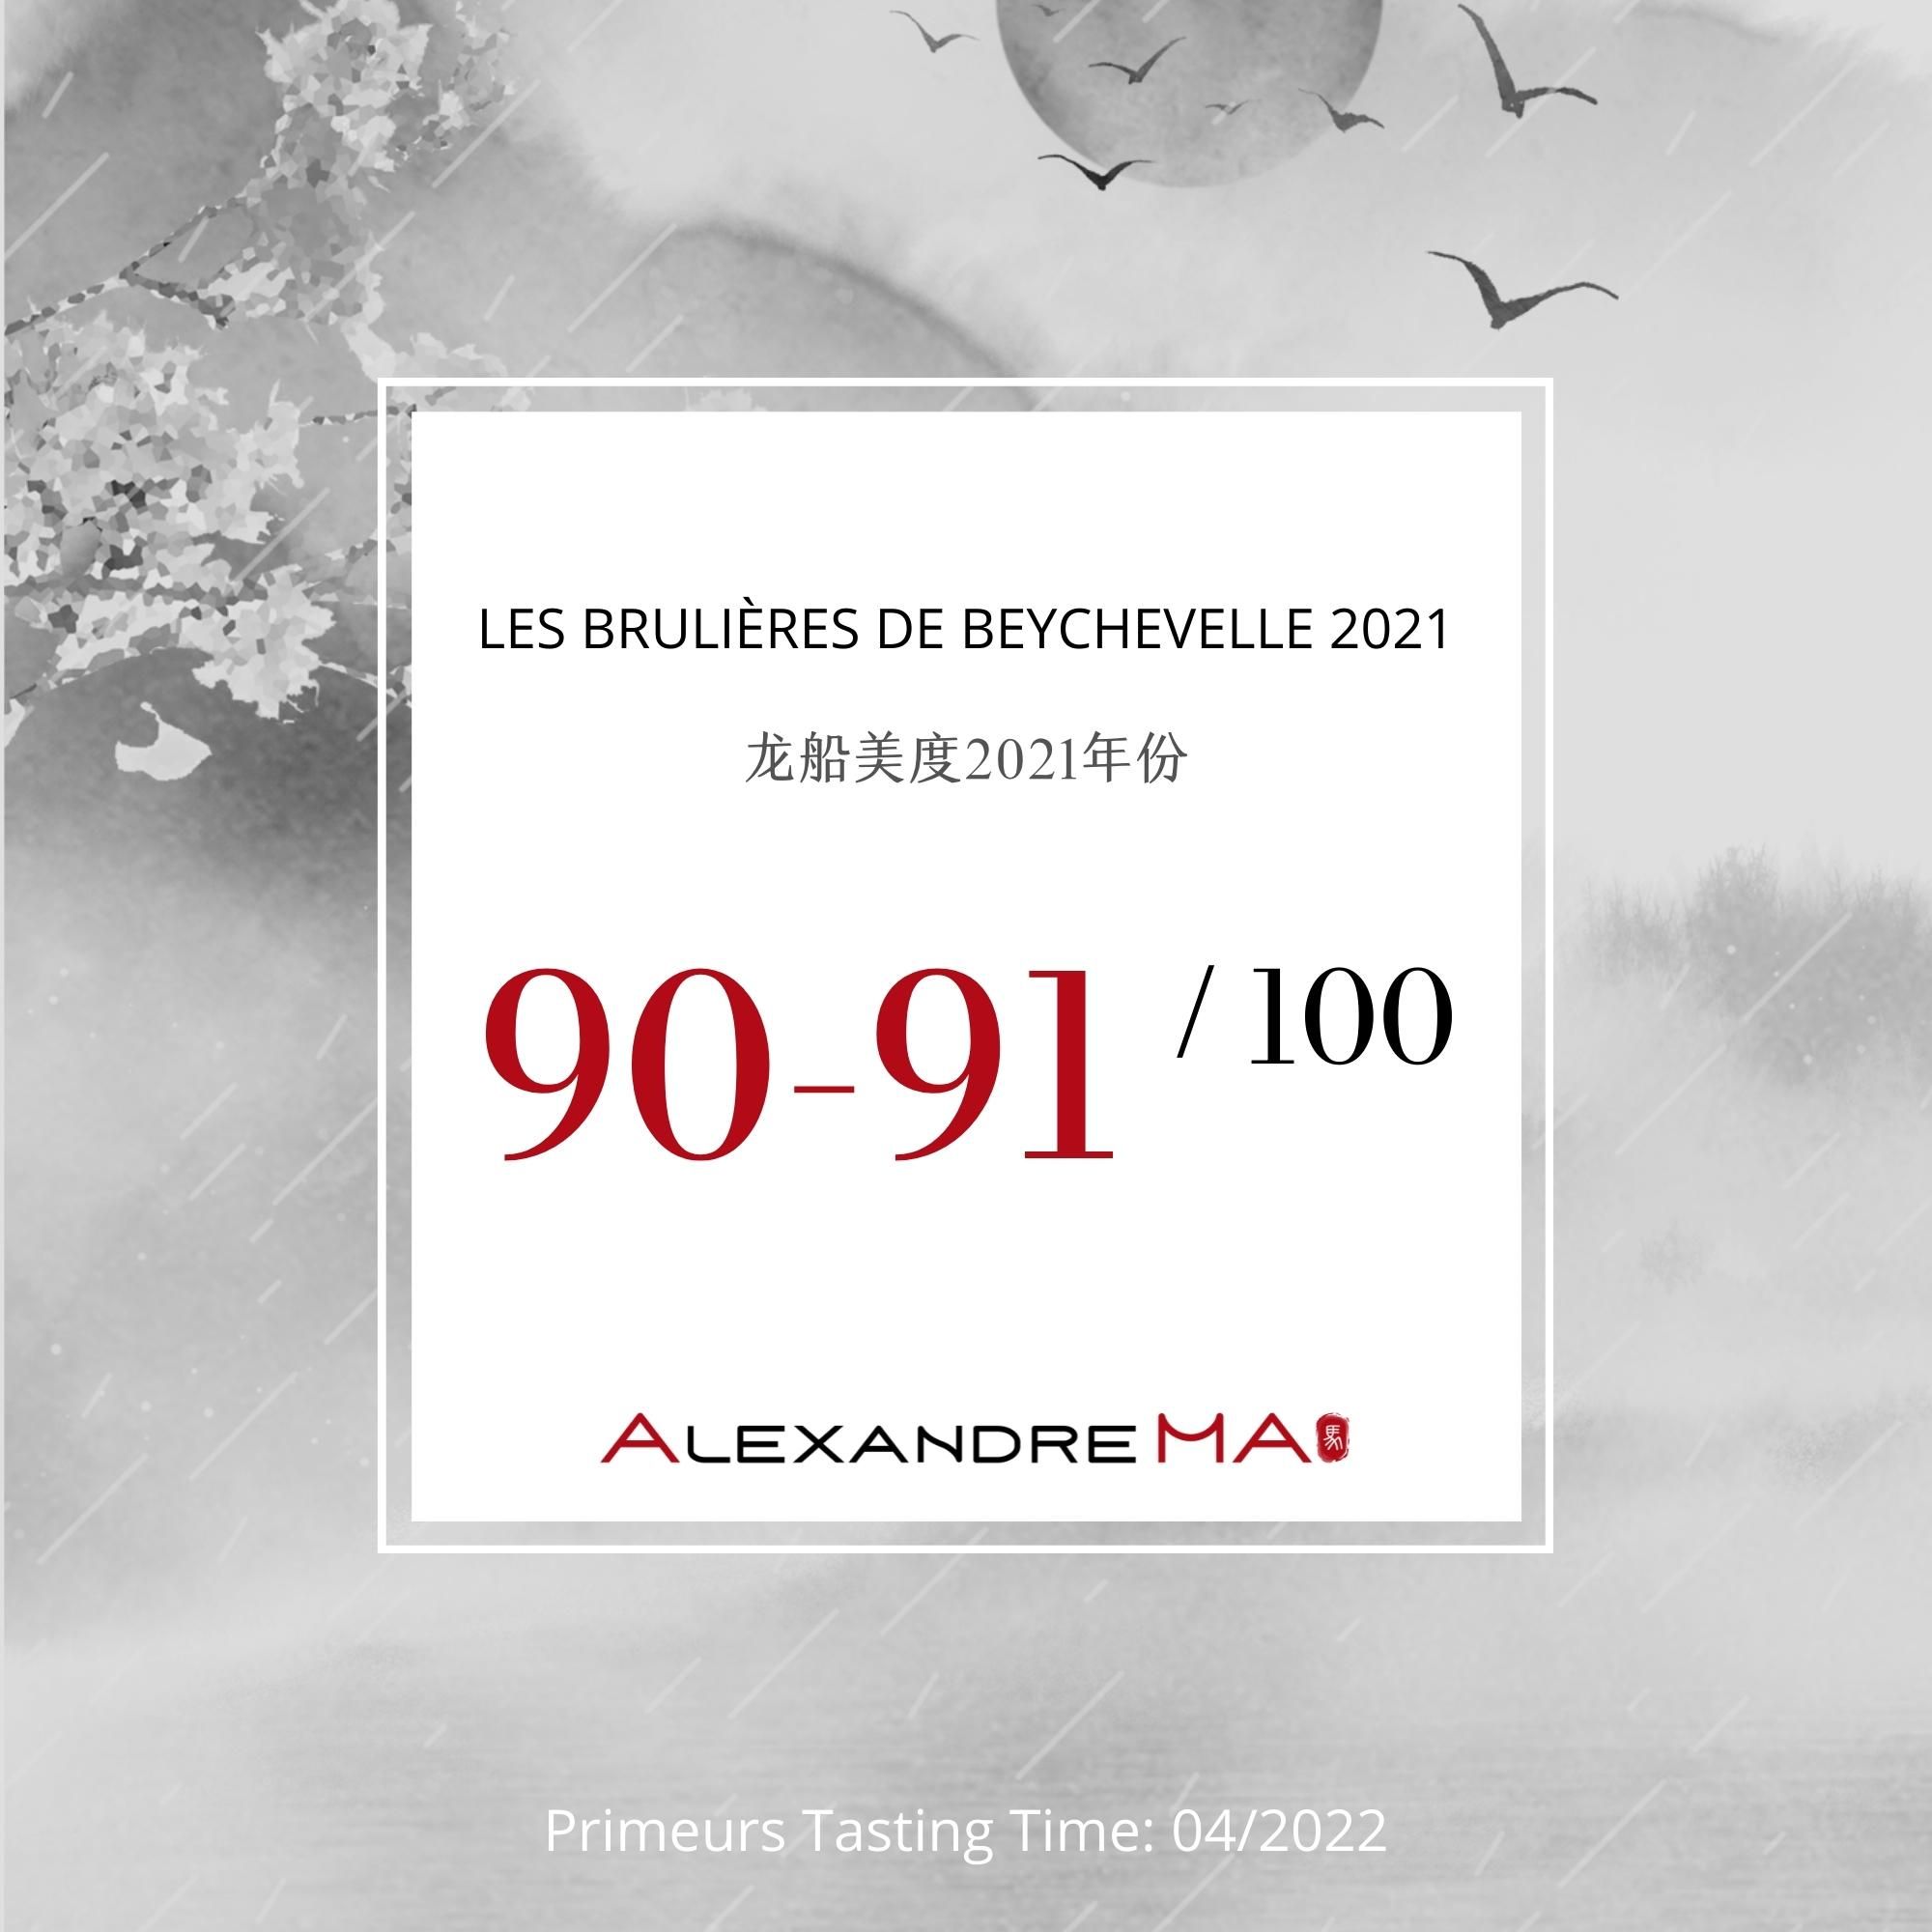 Les Brulières de Beychevelle 2021 龙船美度 - Alexandre Ma